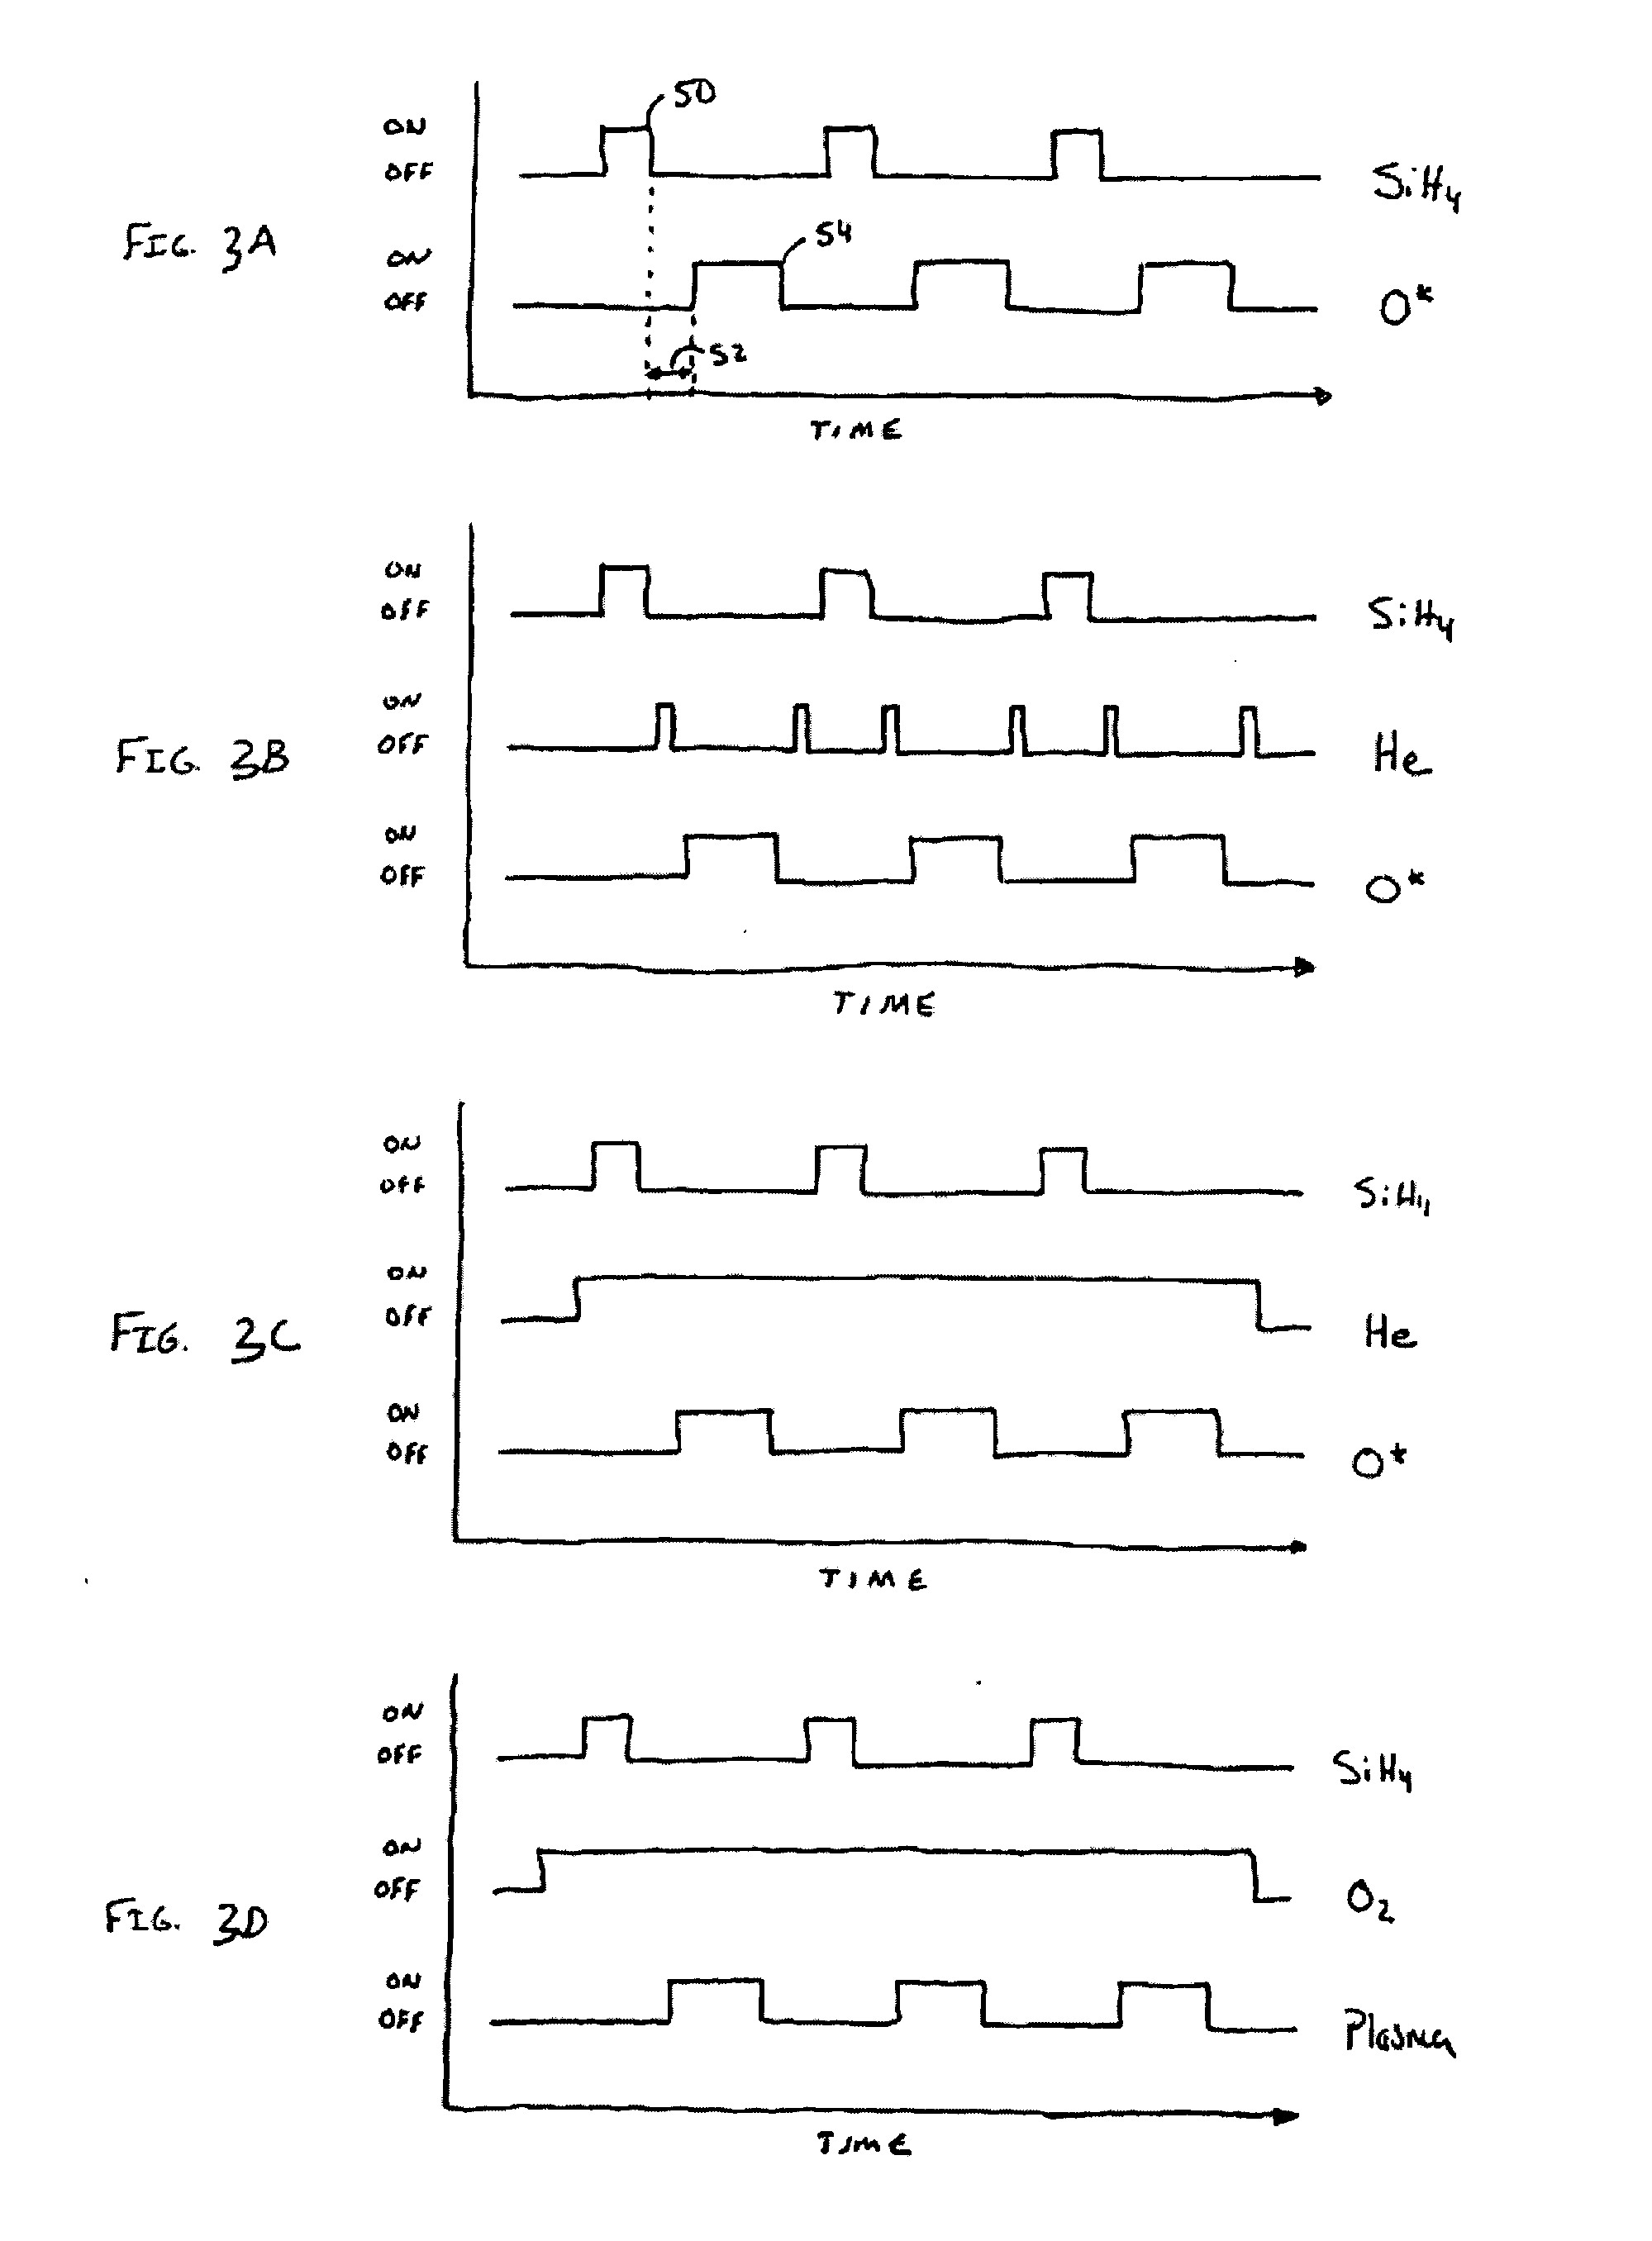 Sequential gas flow oxide deposition technique